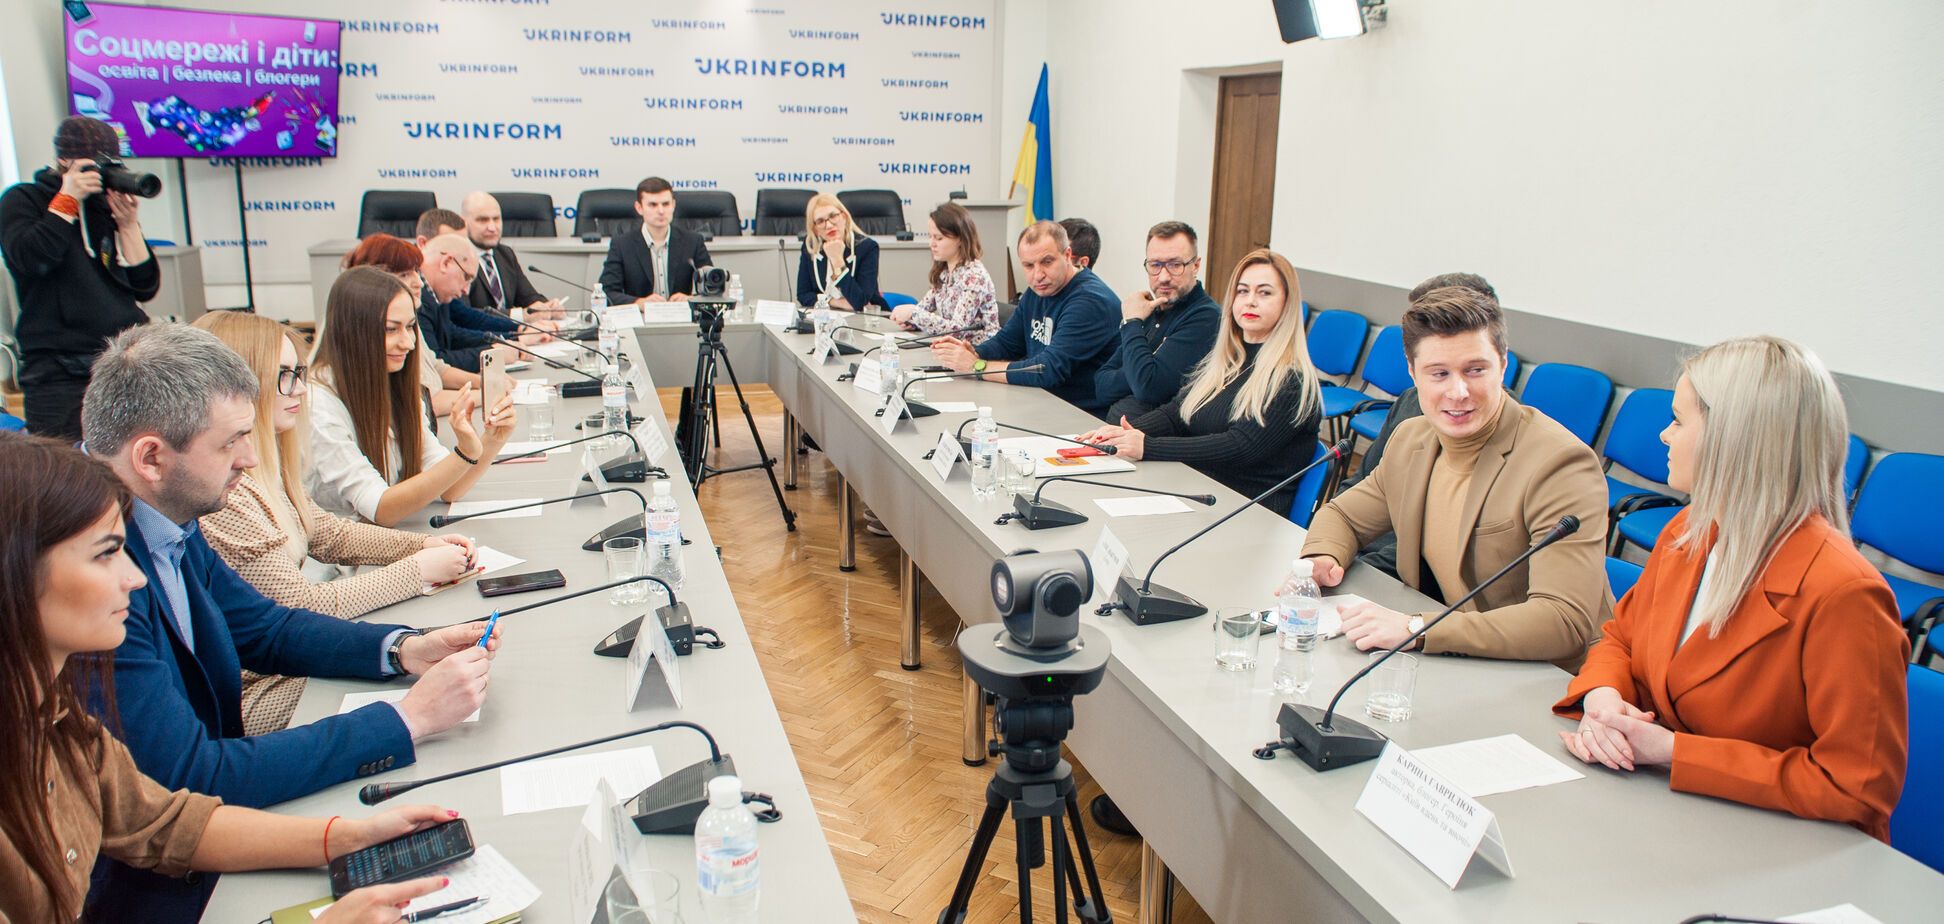 Безопасность детей в соцсетях: в Украине стартовала образовательная платформа 'Академия.online'